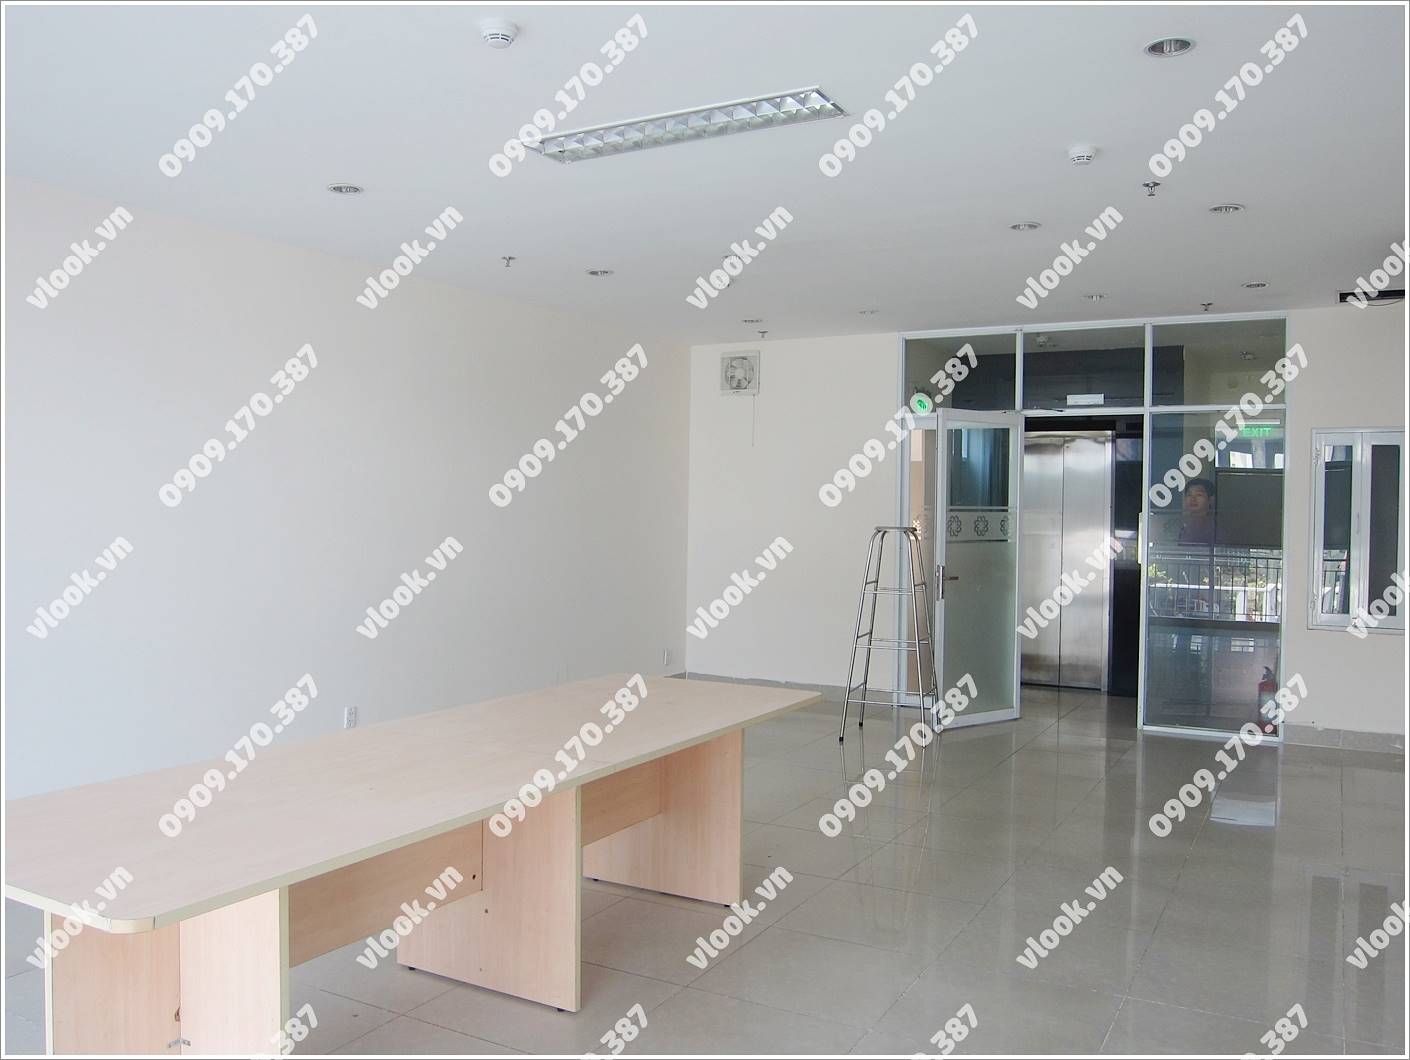 Cao ốc văn phòng cho thuê Hoa Rang Building Ngô Đức Kế Quận 1, TP.HCM - vlook.vn